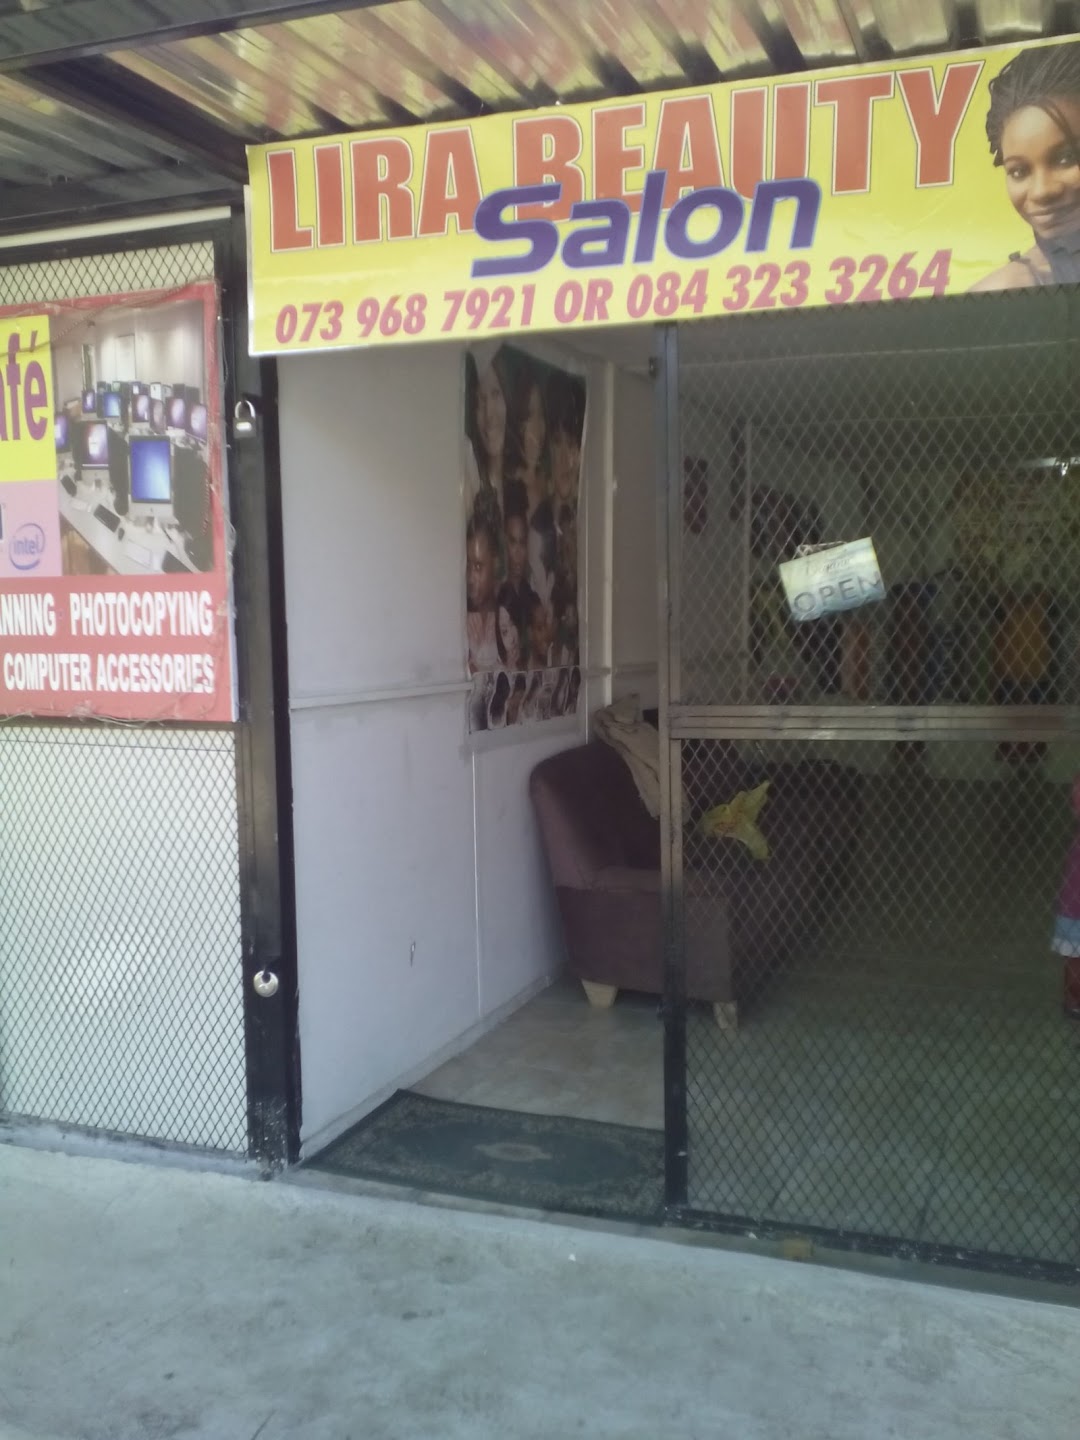 Lira Beauty Salon